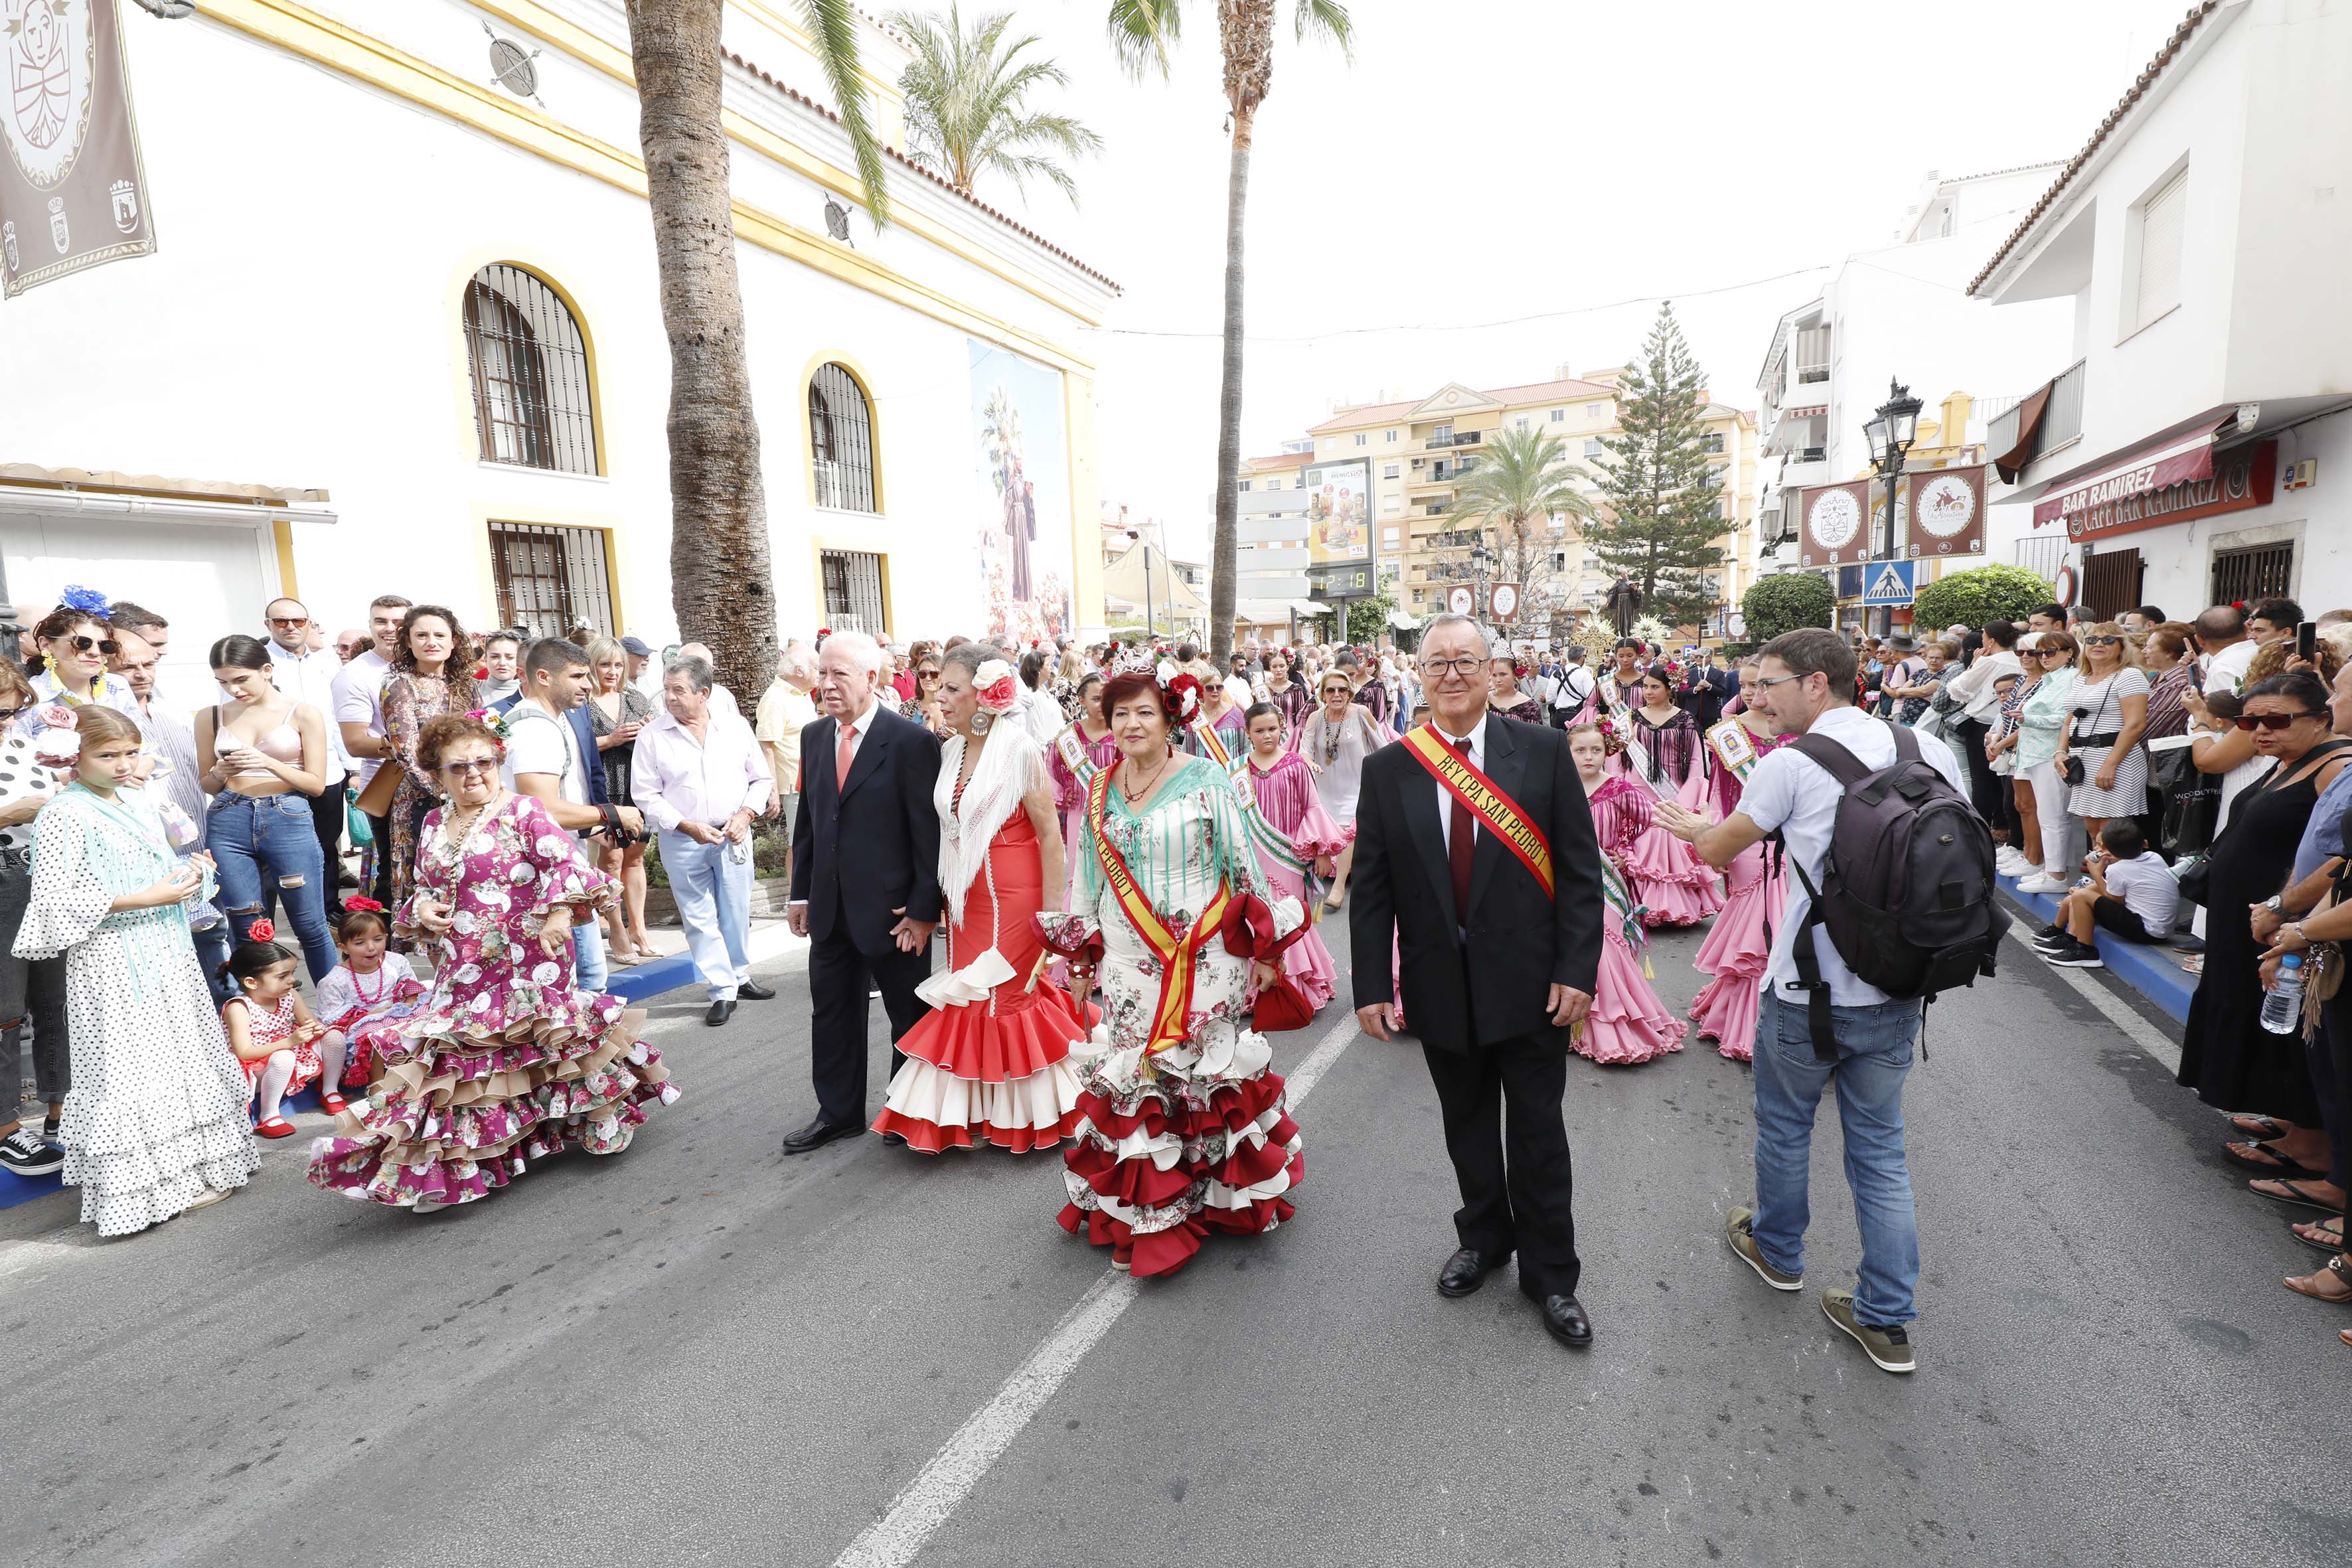 San Pedro Alcántara vive su Día Grande en honor del Patrón con un gran ambiente festivo y de devoción